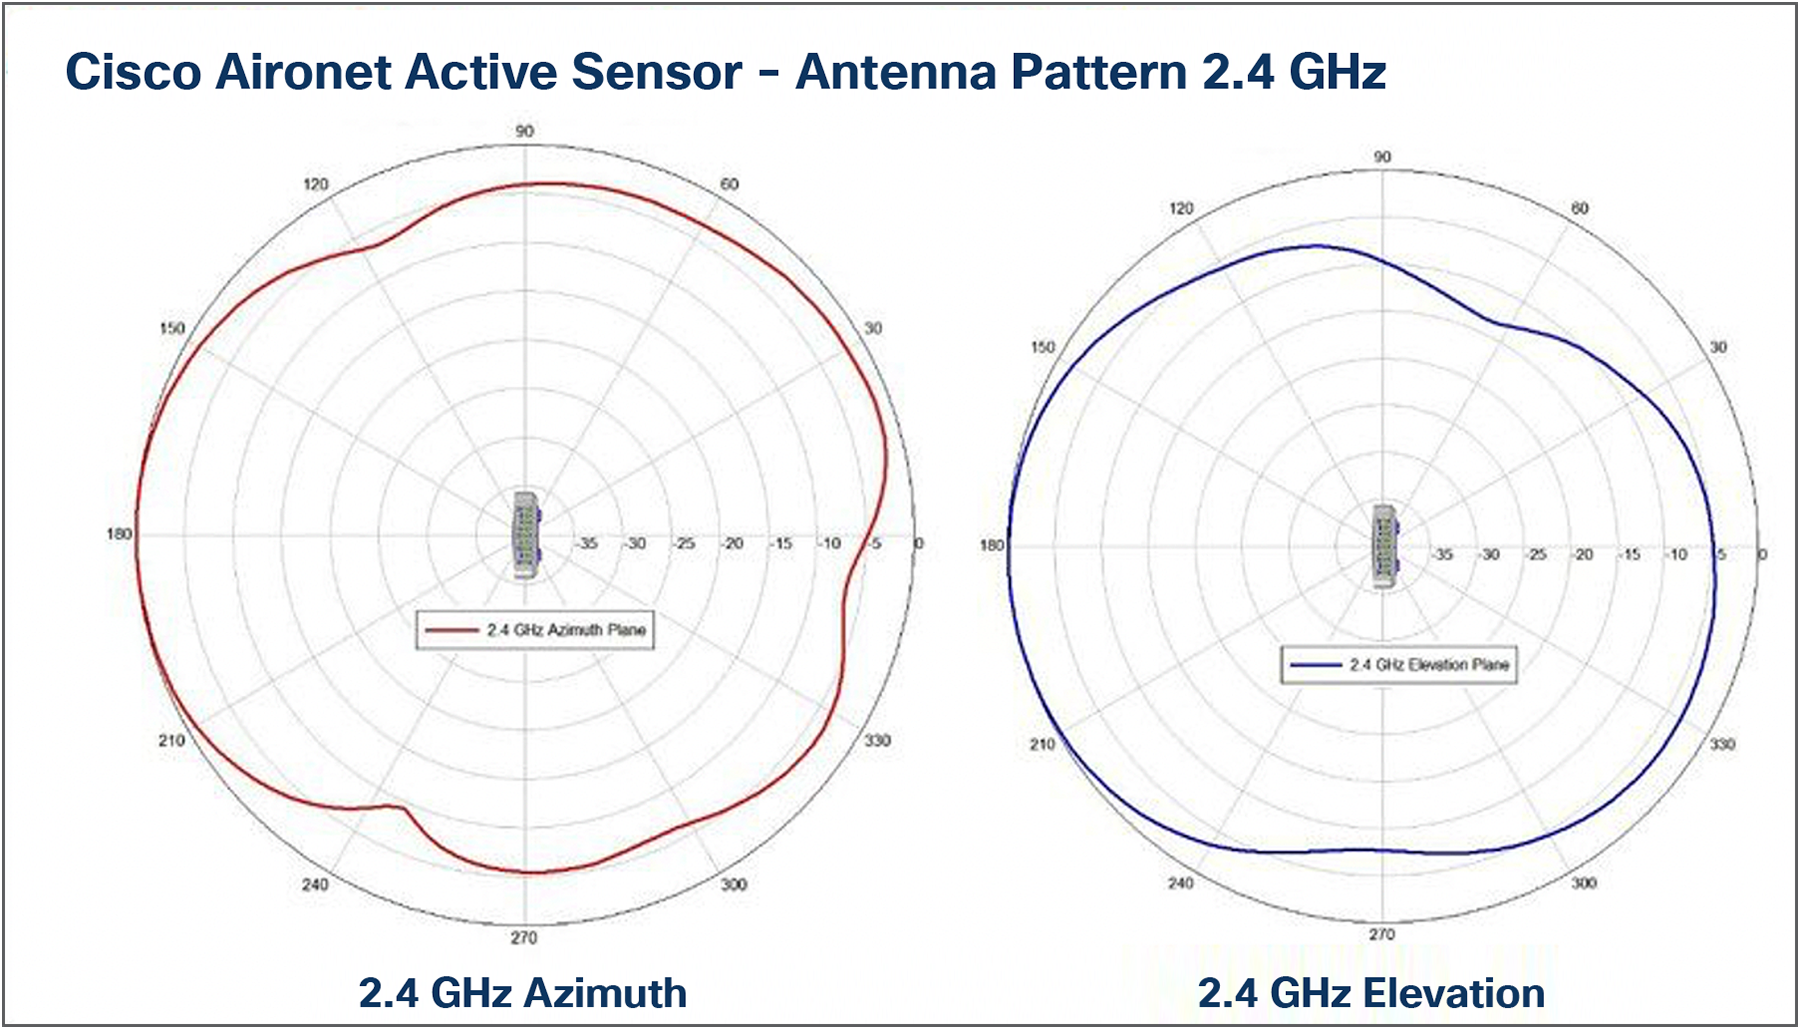 Antenna patterns, 2.4 GHz